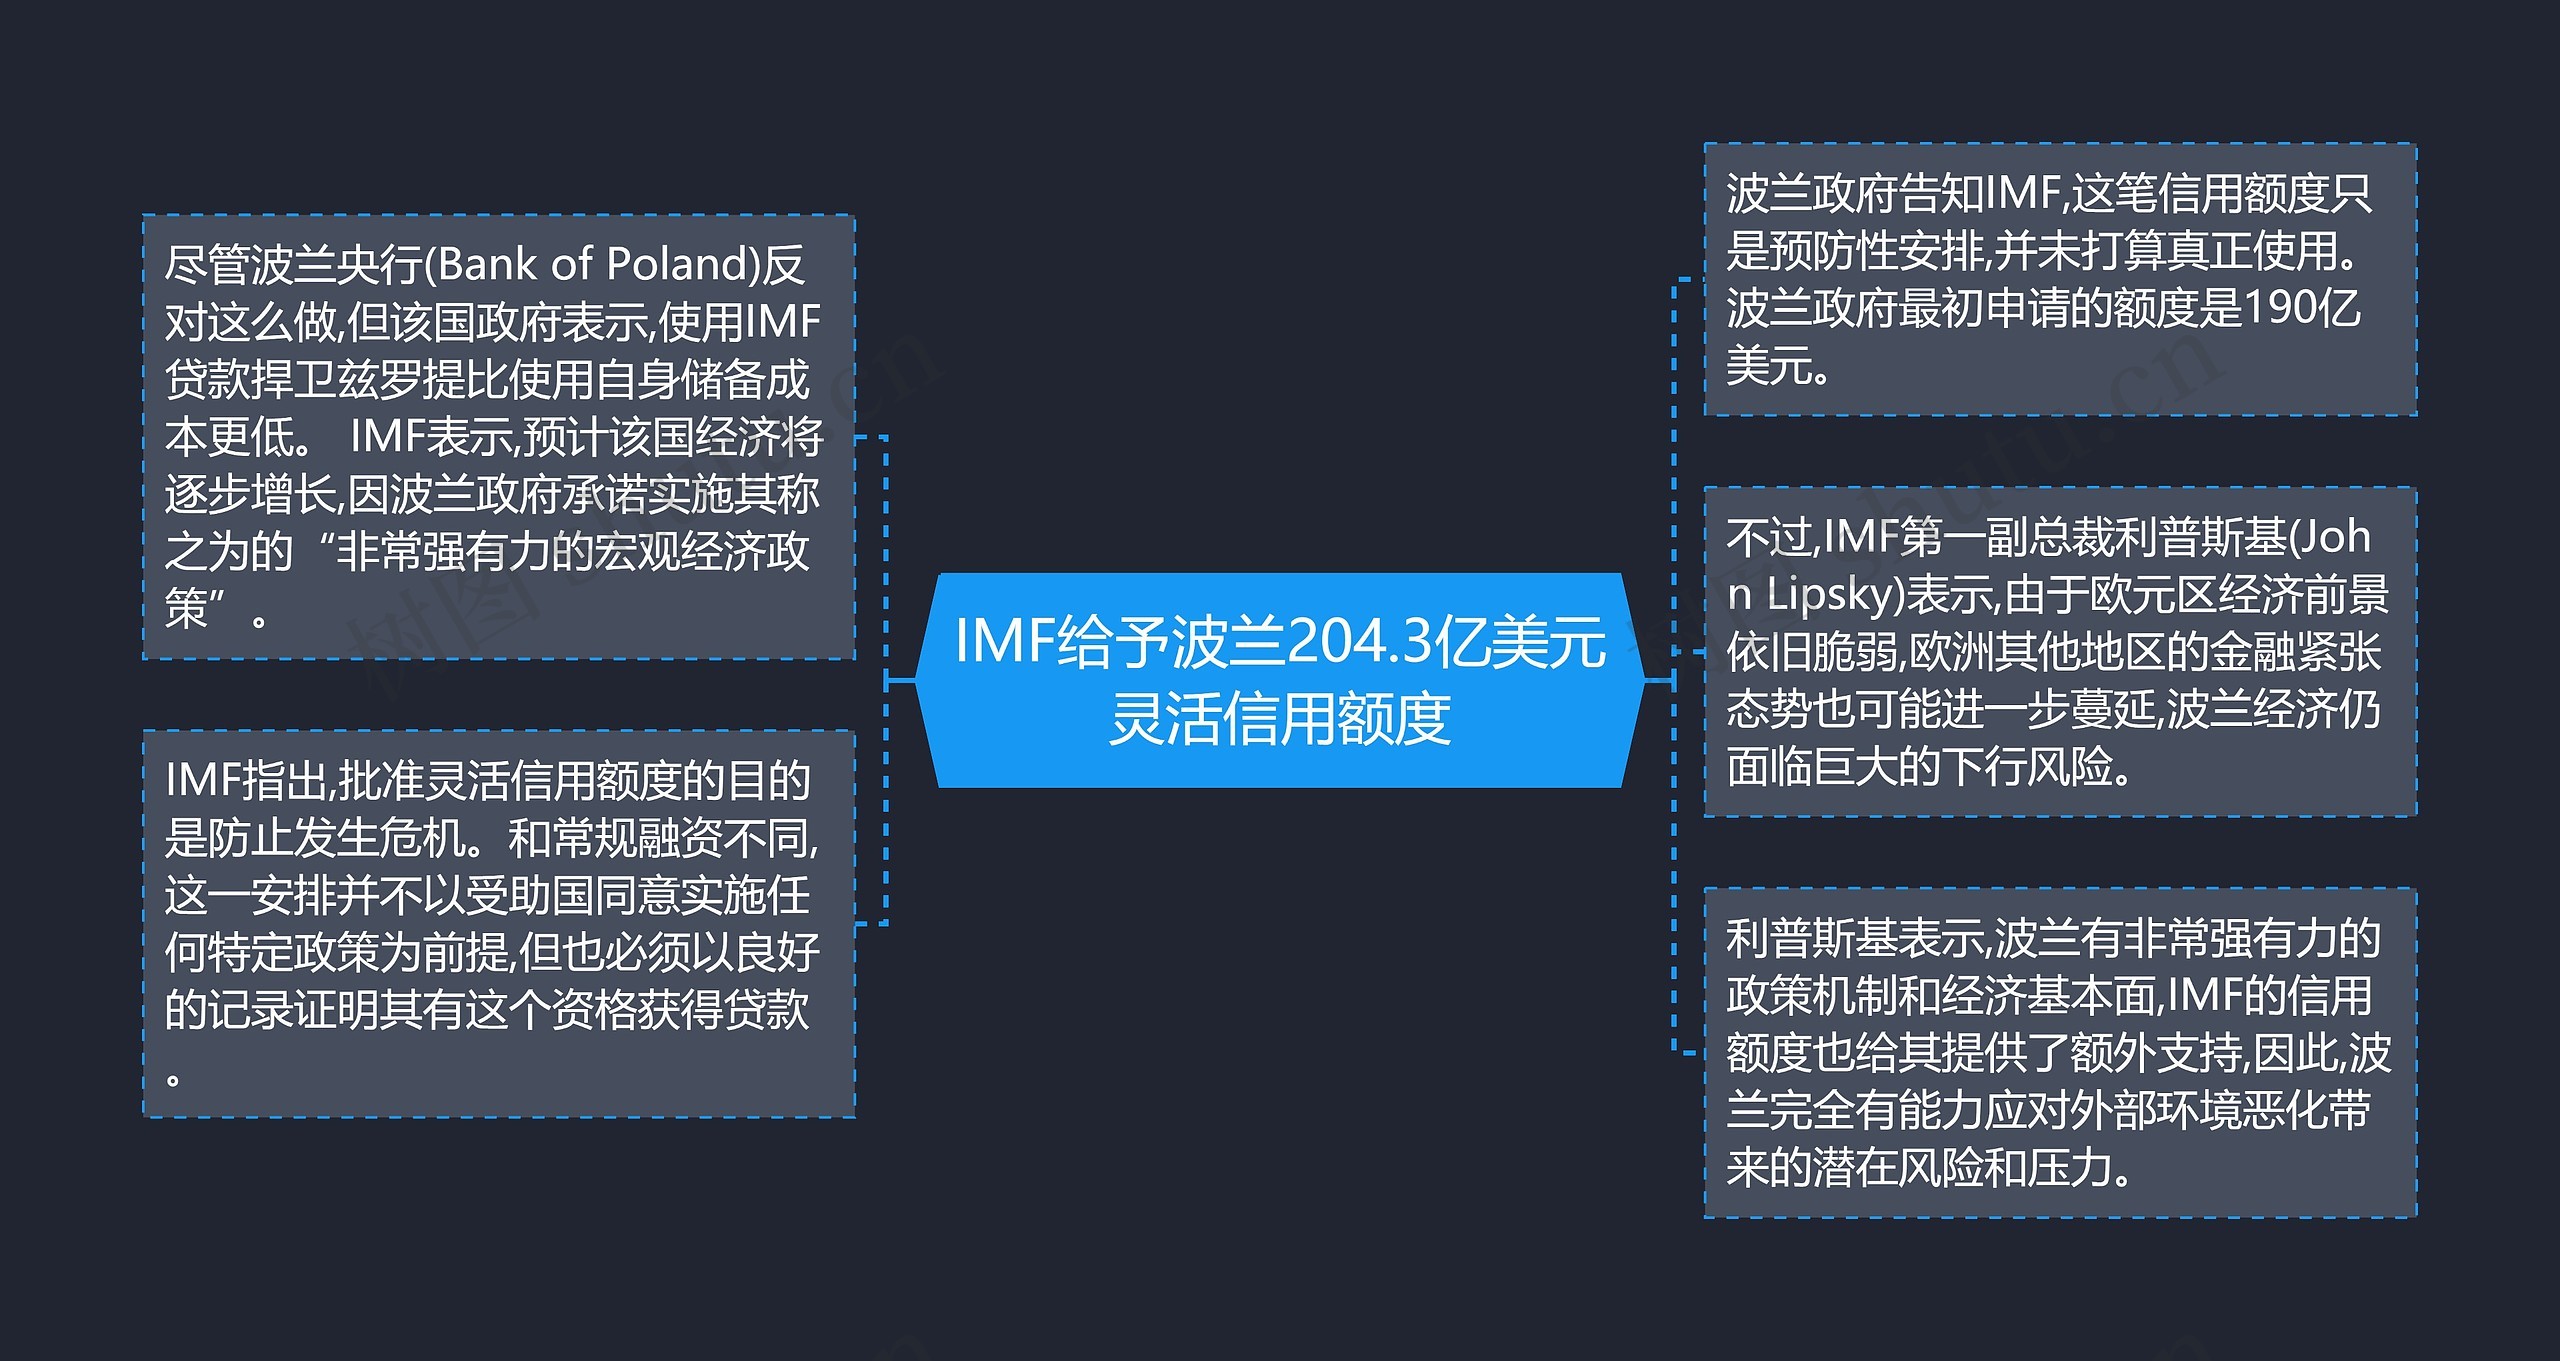 IMF给予波兰204.3亿美元灵活信用额度思维导图